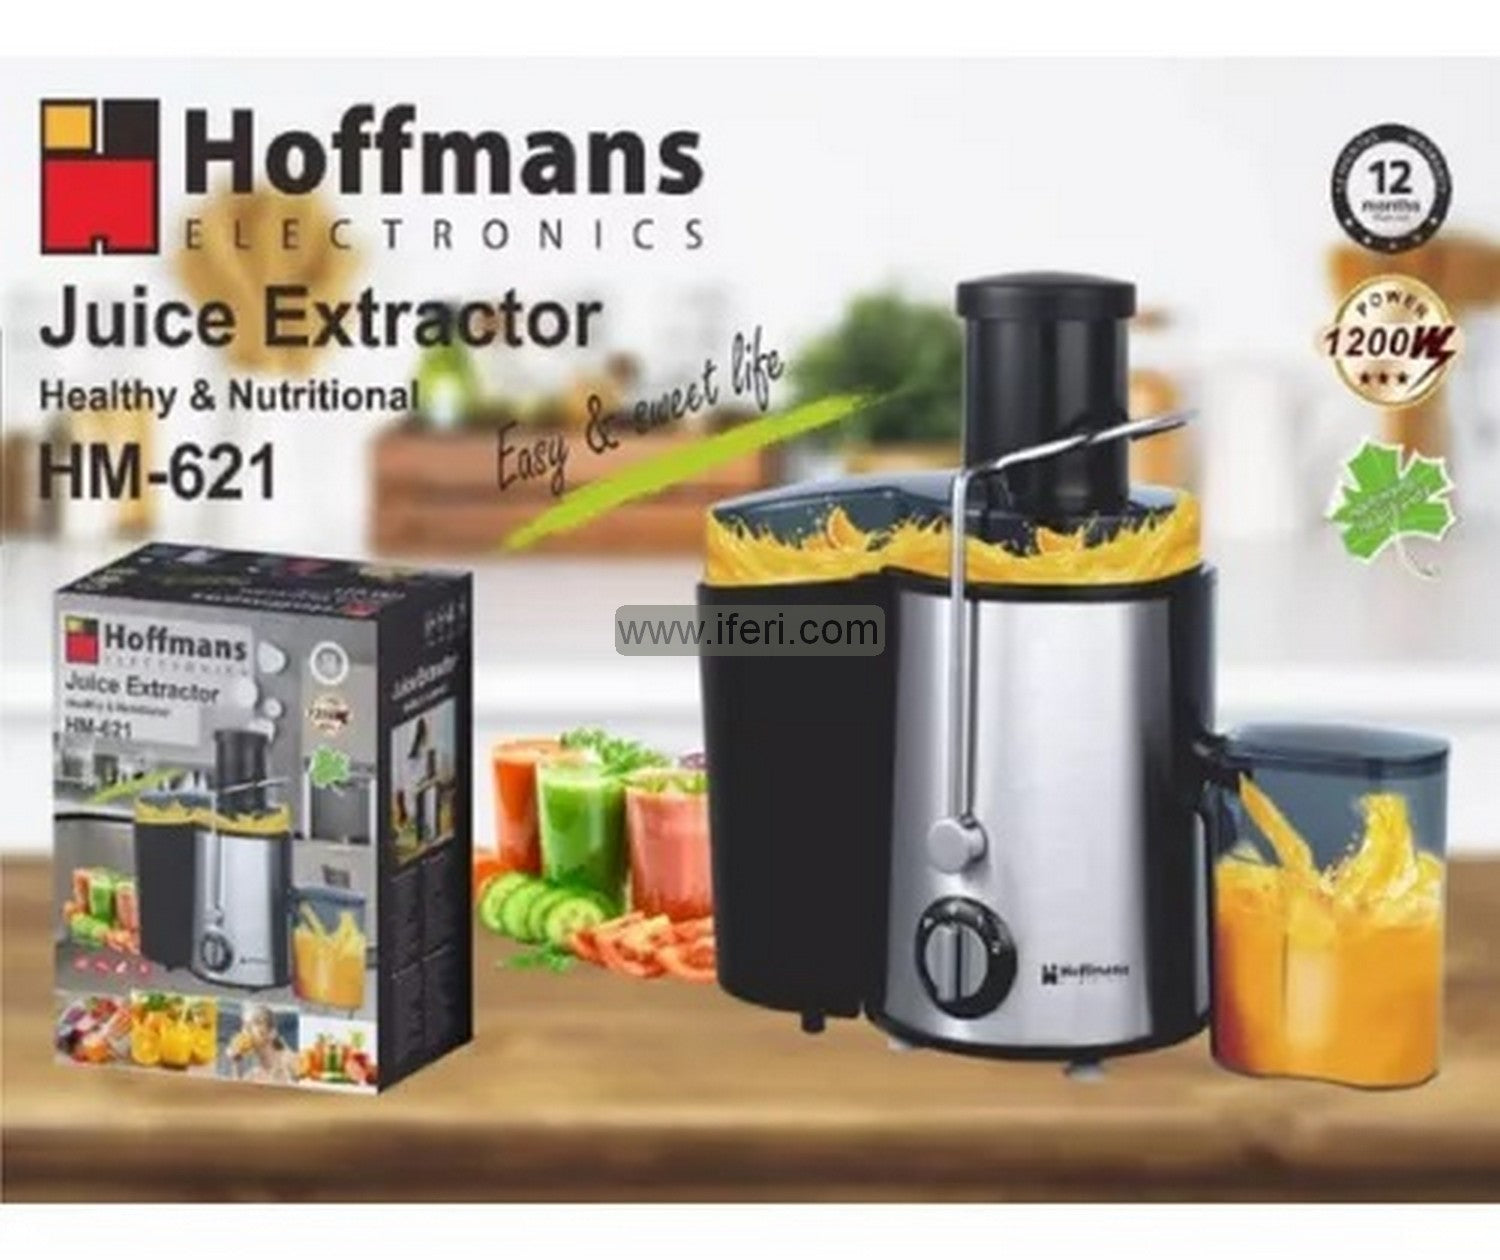 Hoffmans 1200W Juice Extractor HM-621